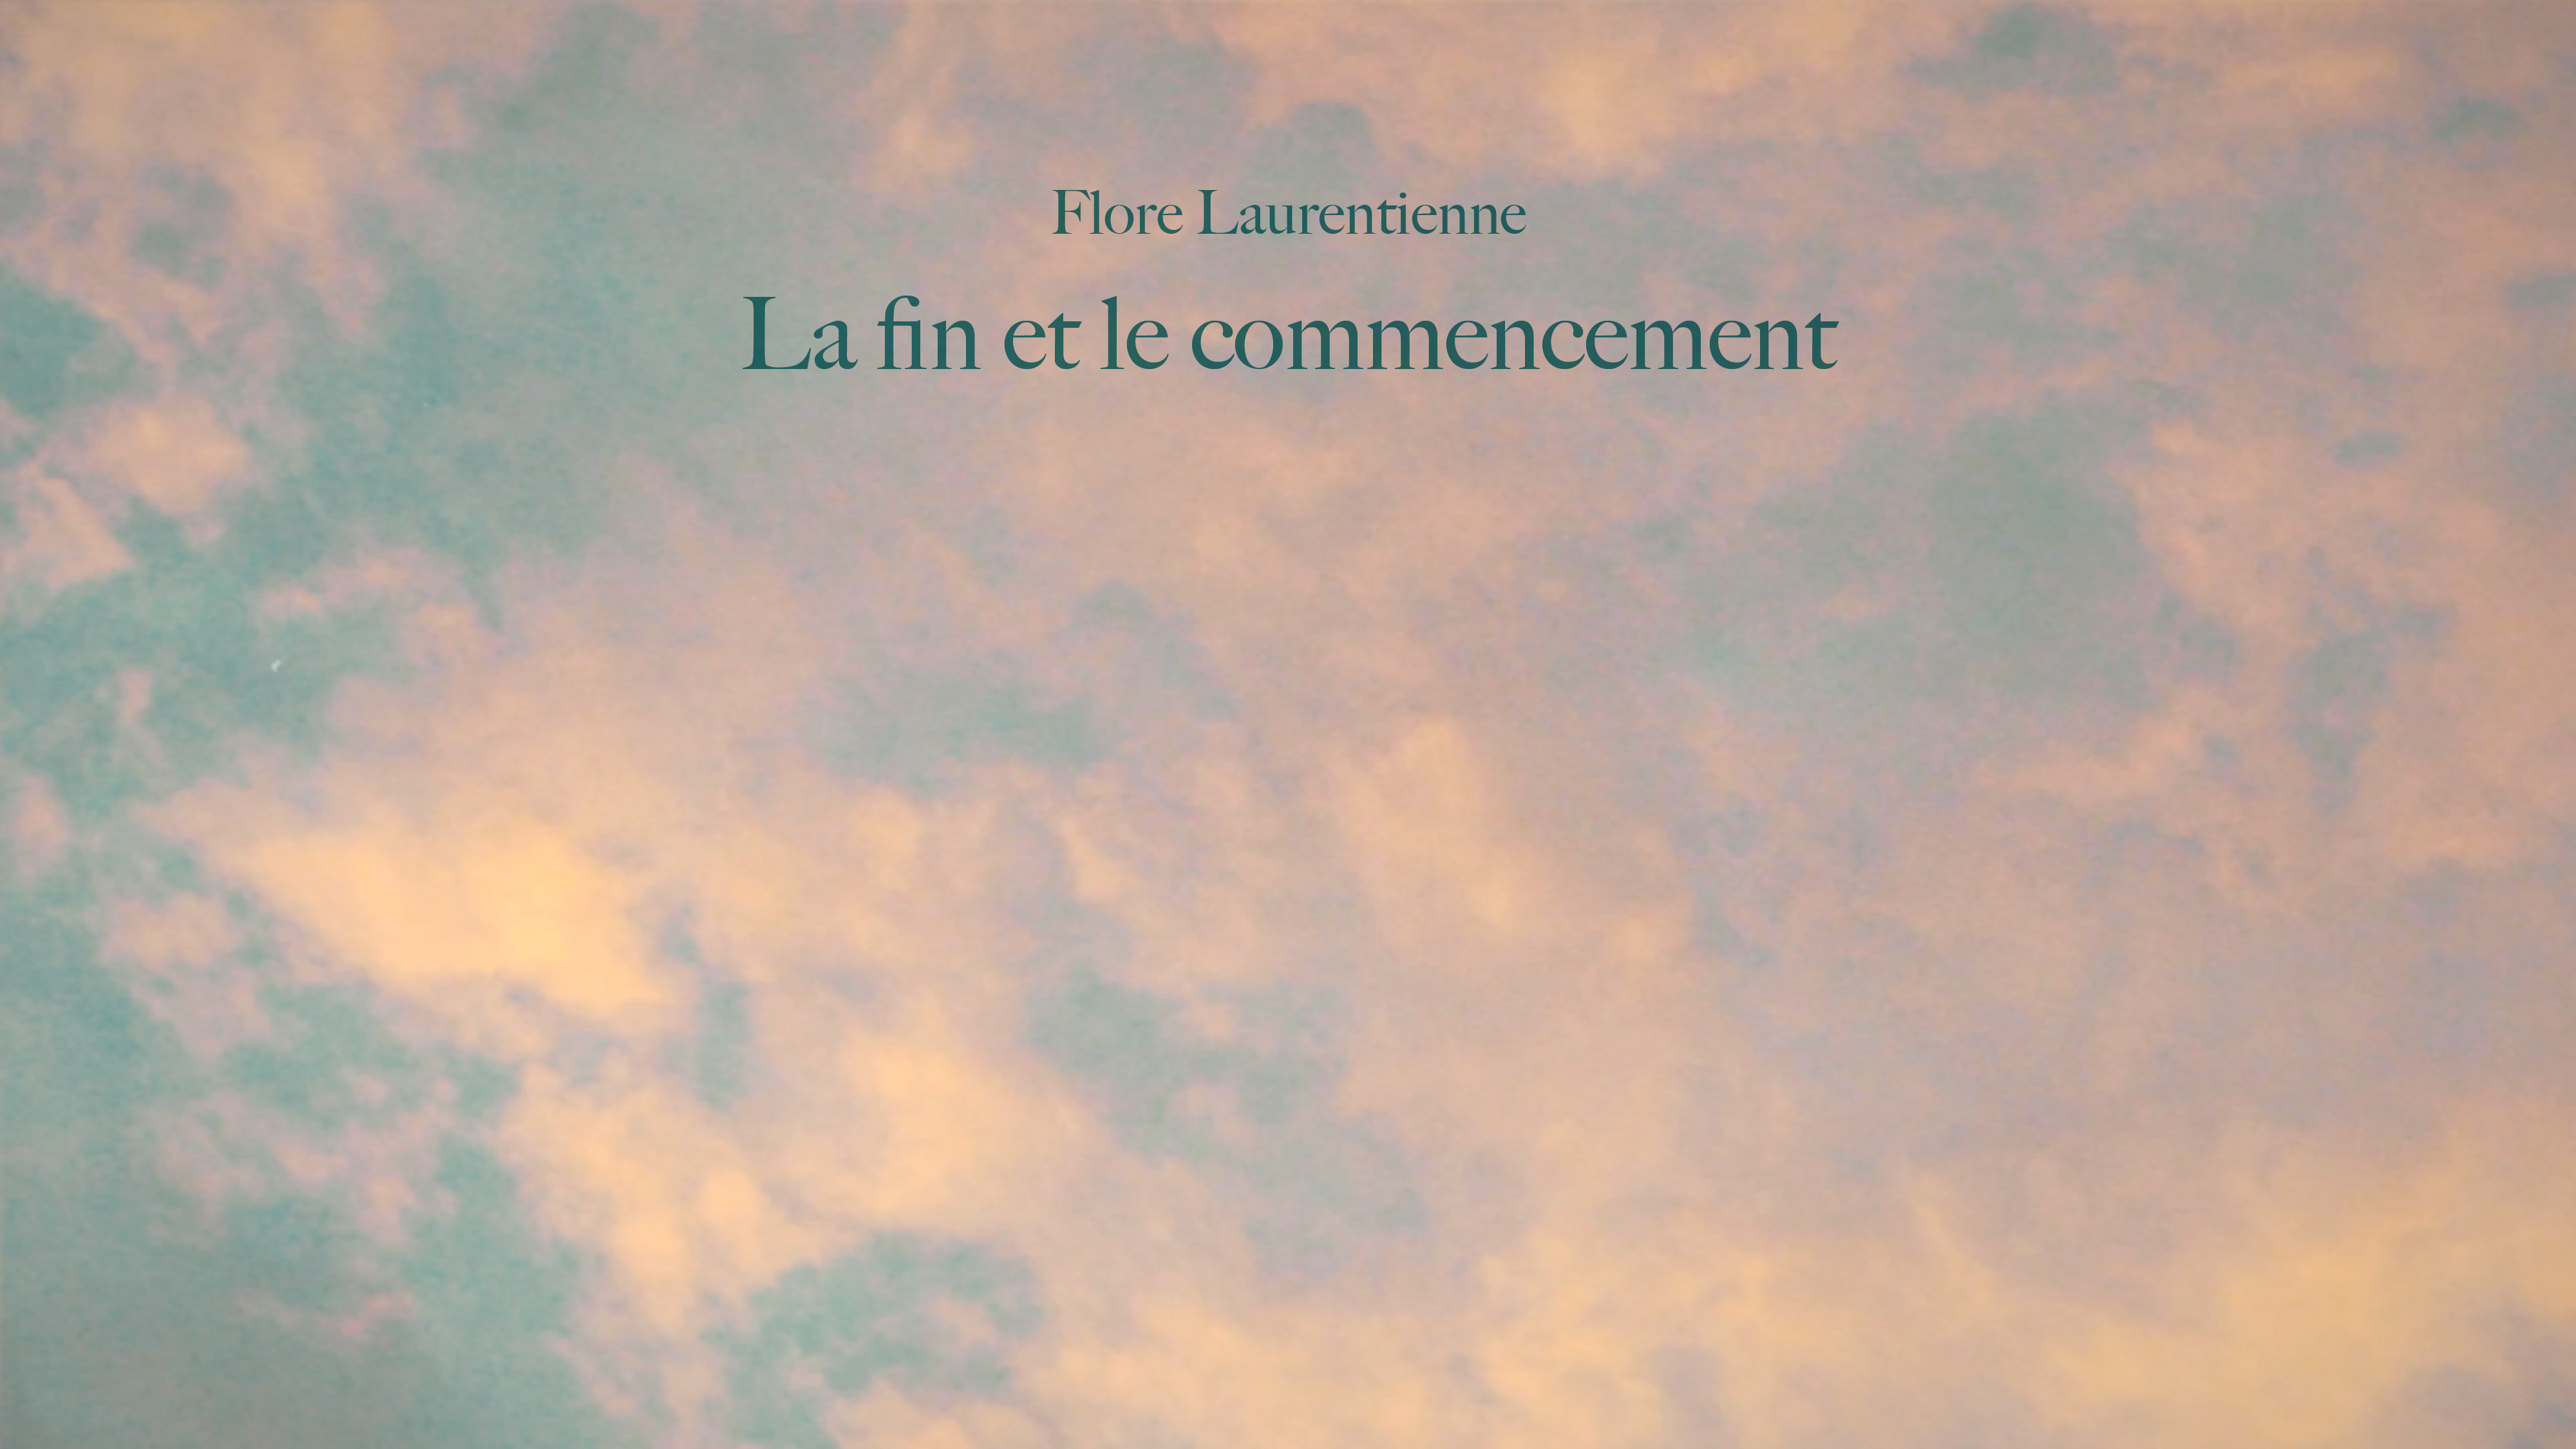 Link to Video for Flore Laurentienne – La fin et le commencement (Clip officiel)